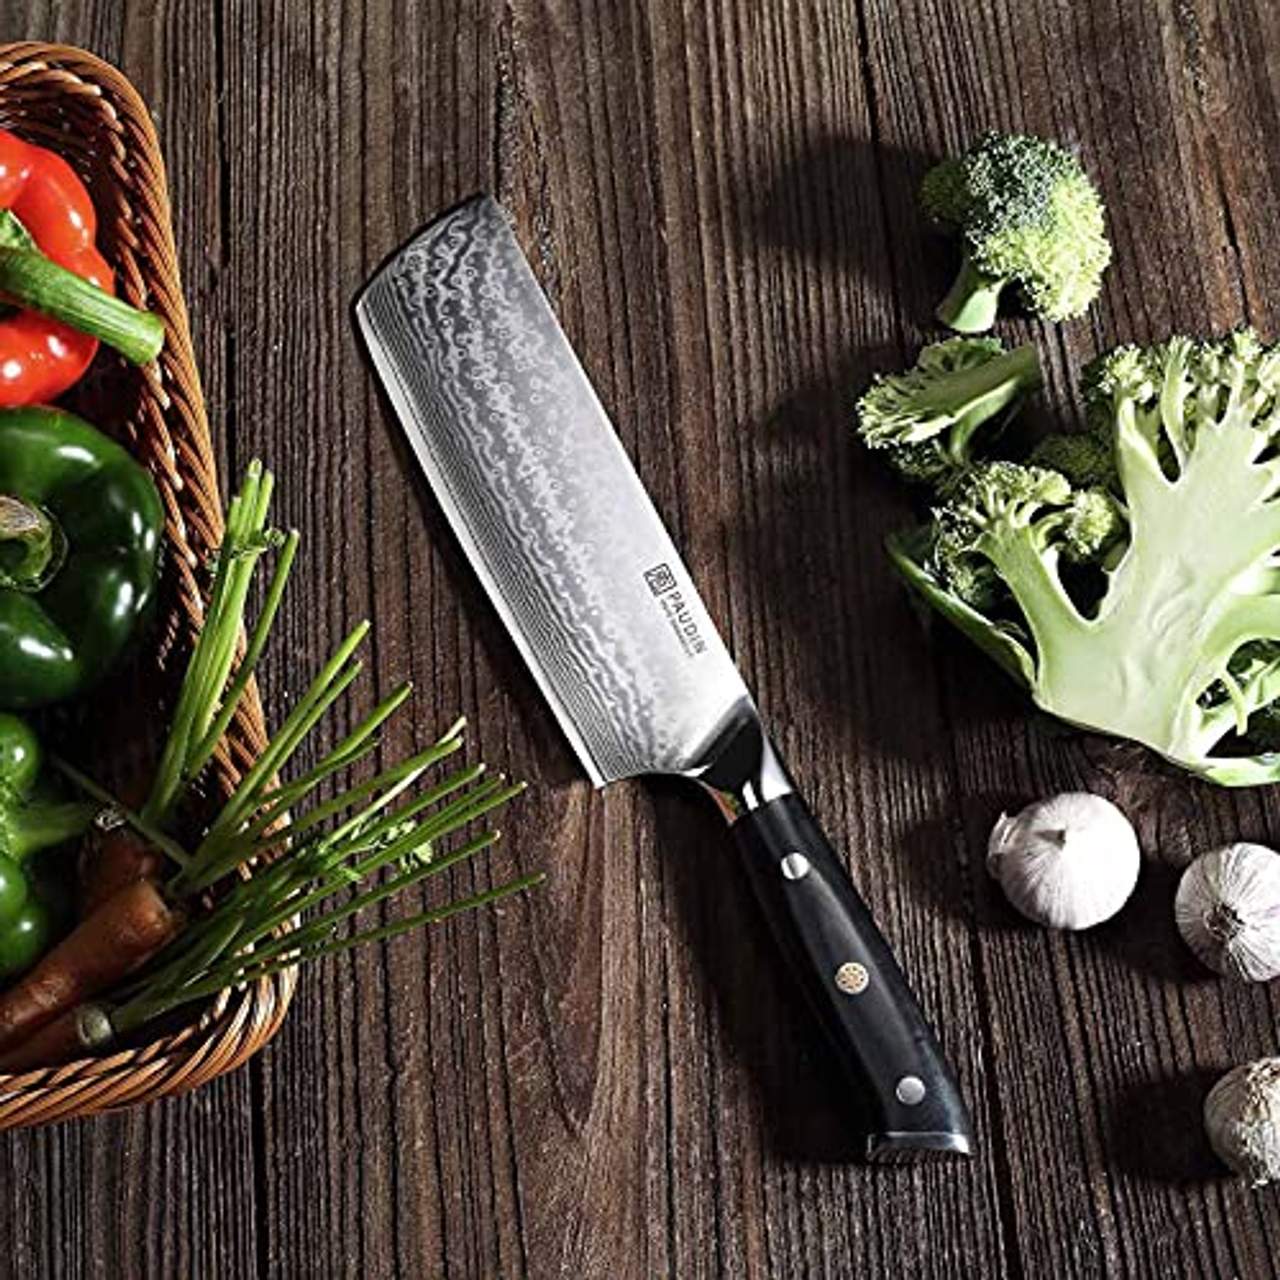 PAUDIN Damastmesser Nakiri Messer 17cm Professional Küchenmesser